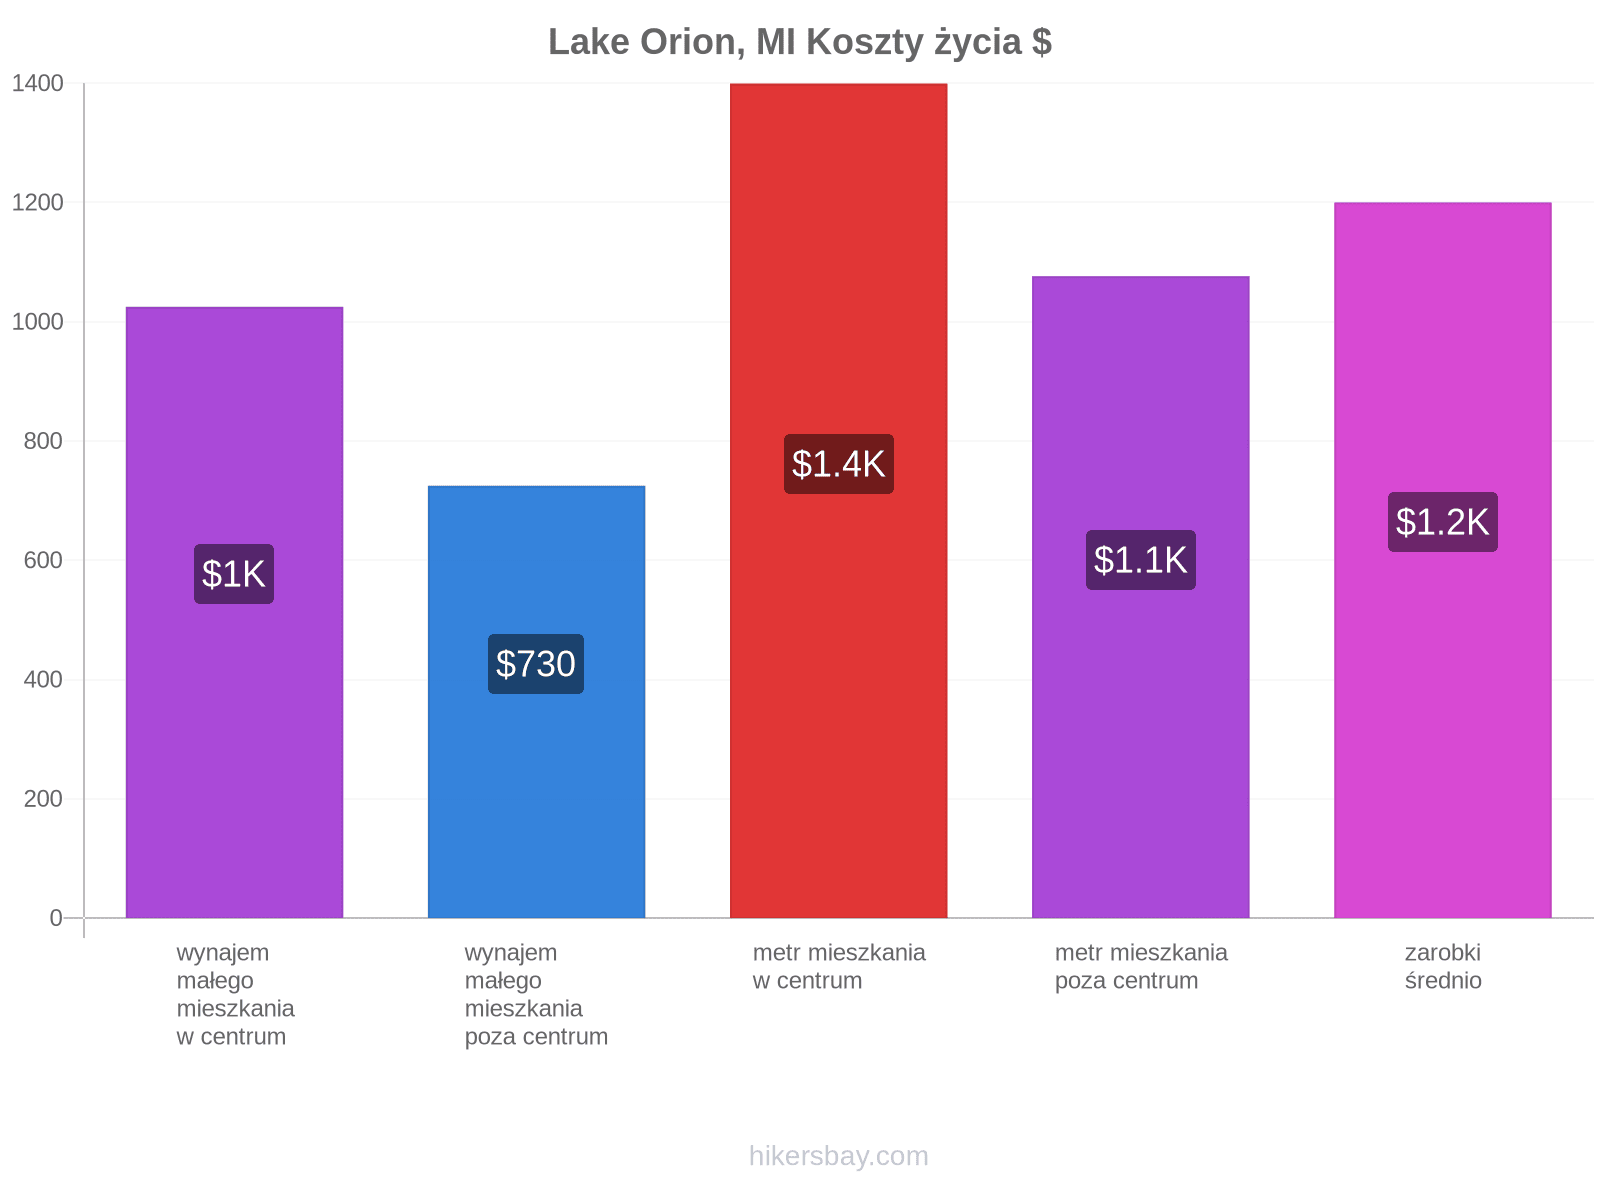 Lake Orion, MI koszty życia hikersbay.com